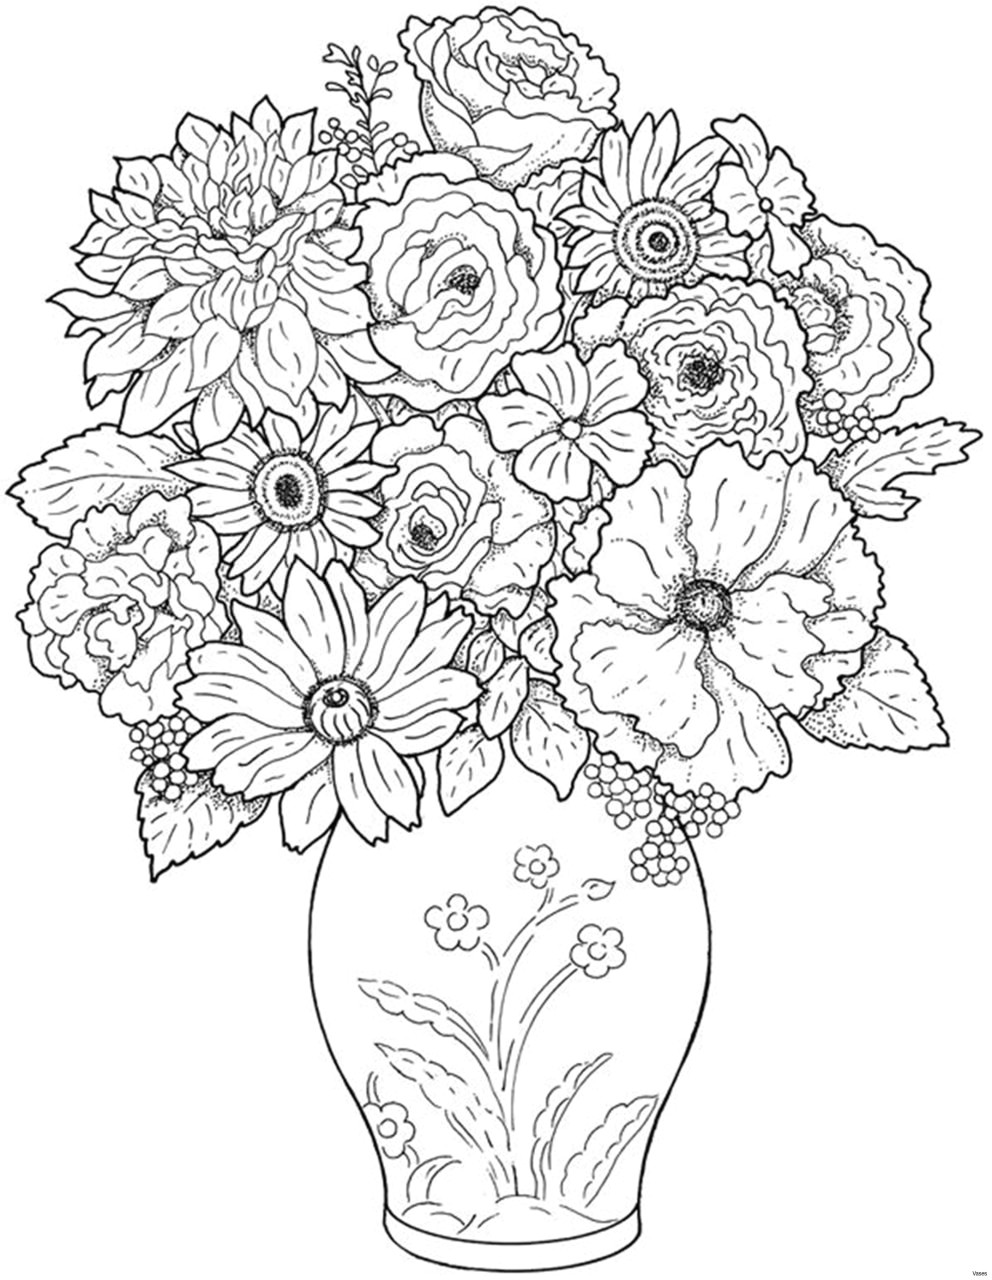 Pencil Drawings Of Flower Vases the Word Vase Wiring Diagram Database